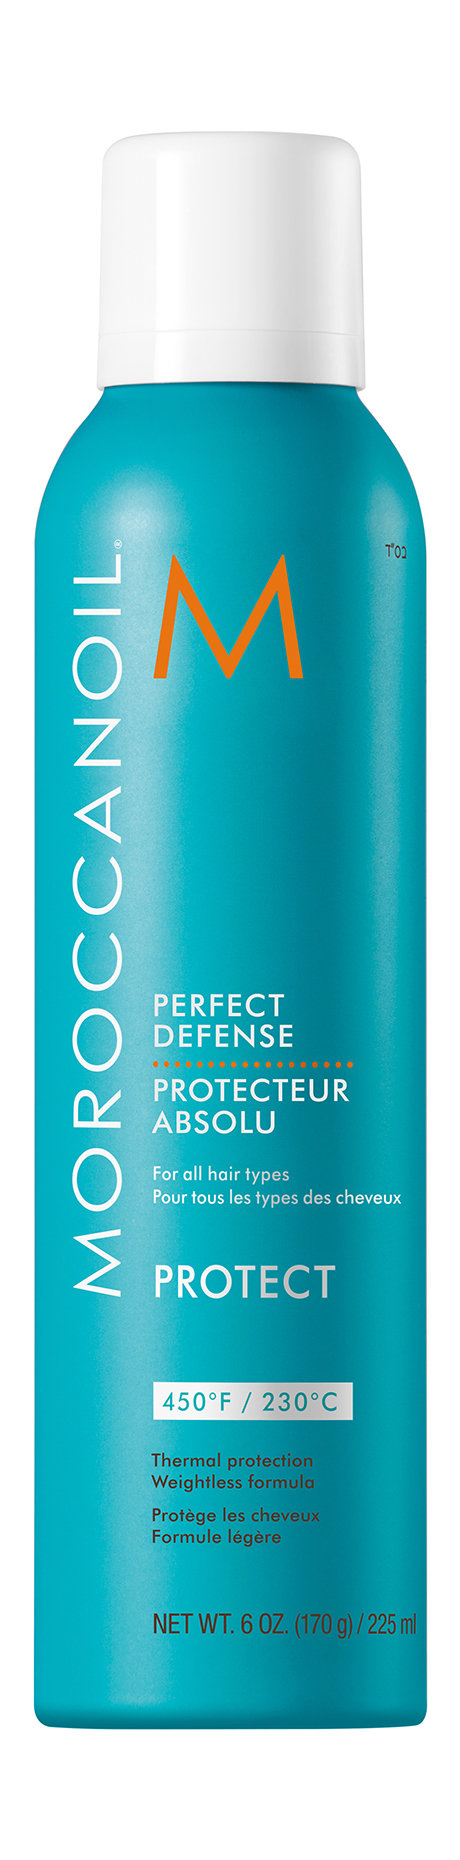 moroccanoil pefrect defense spray